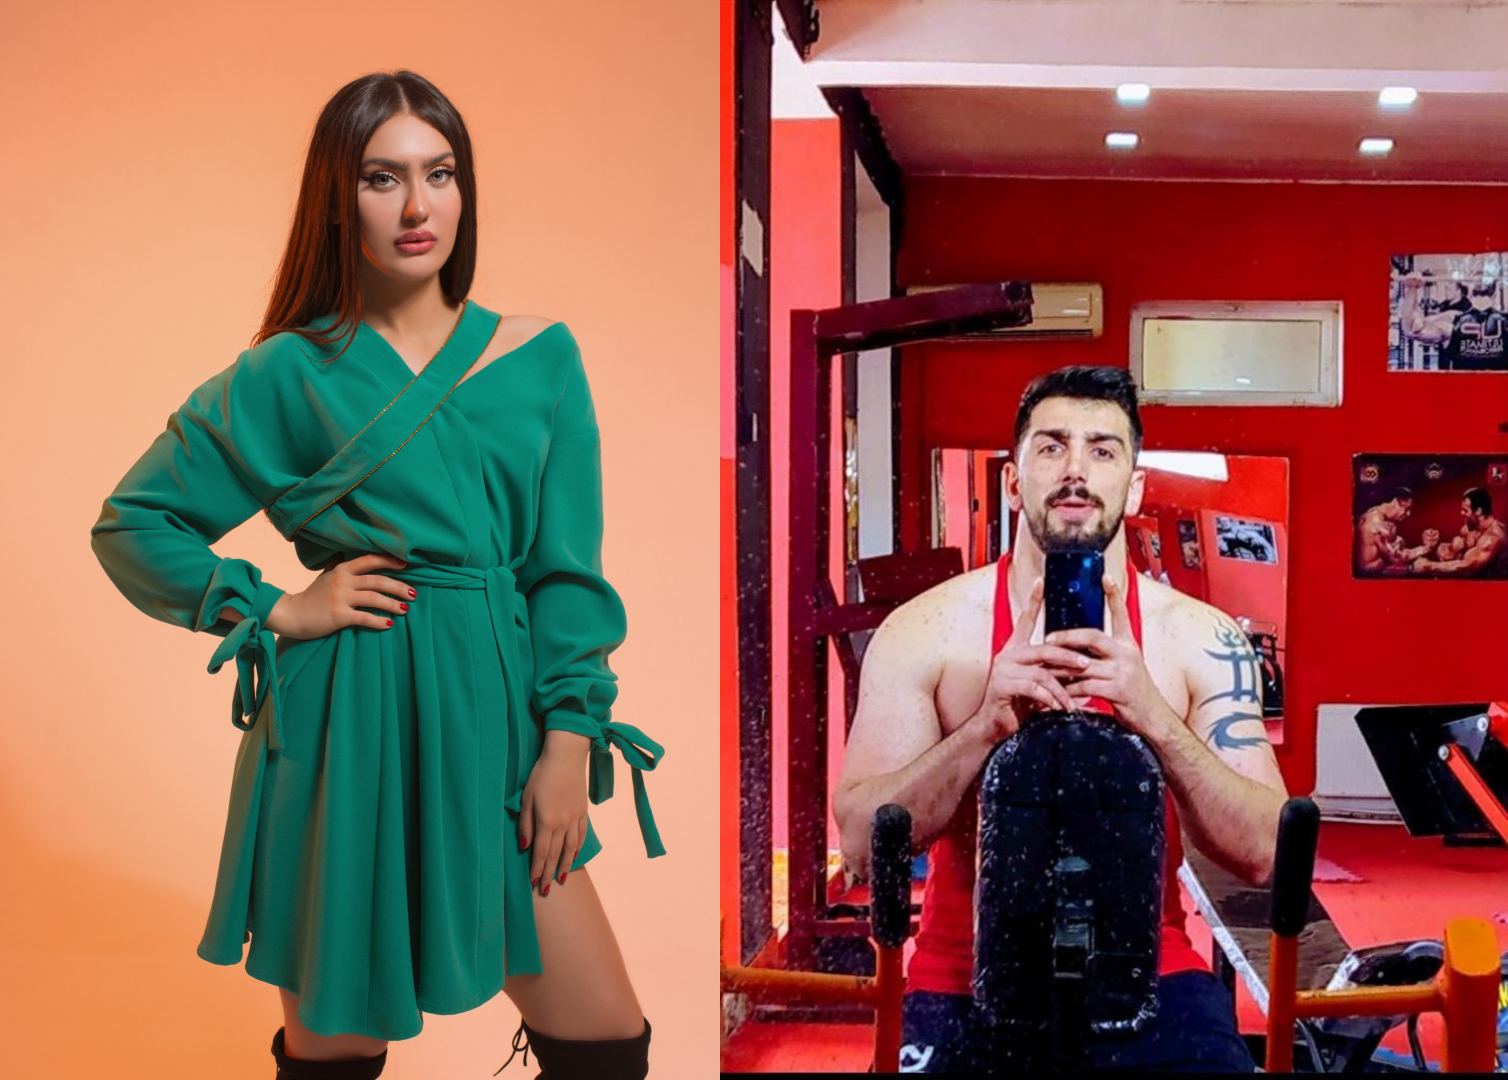 Определены победители конкурса красоты Miss & Mister Azerbaijan 2020 (ФОТО)